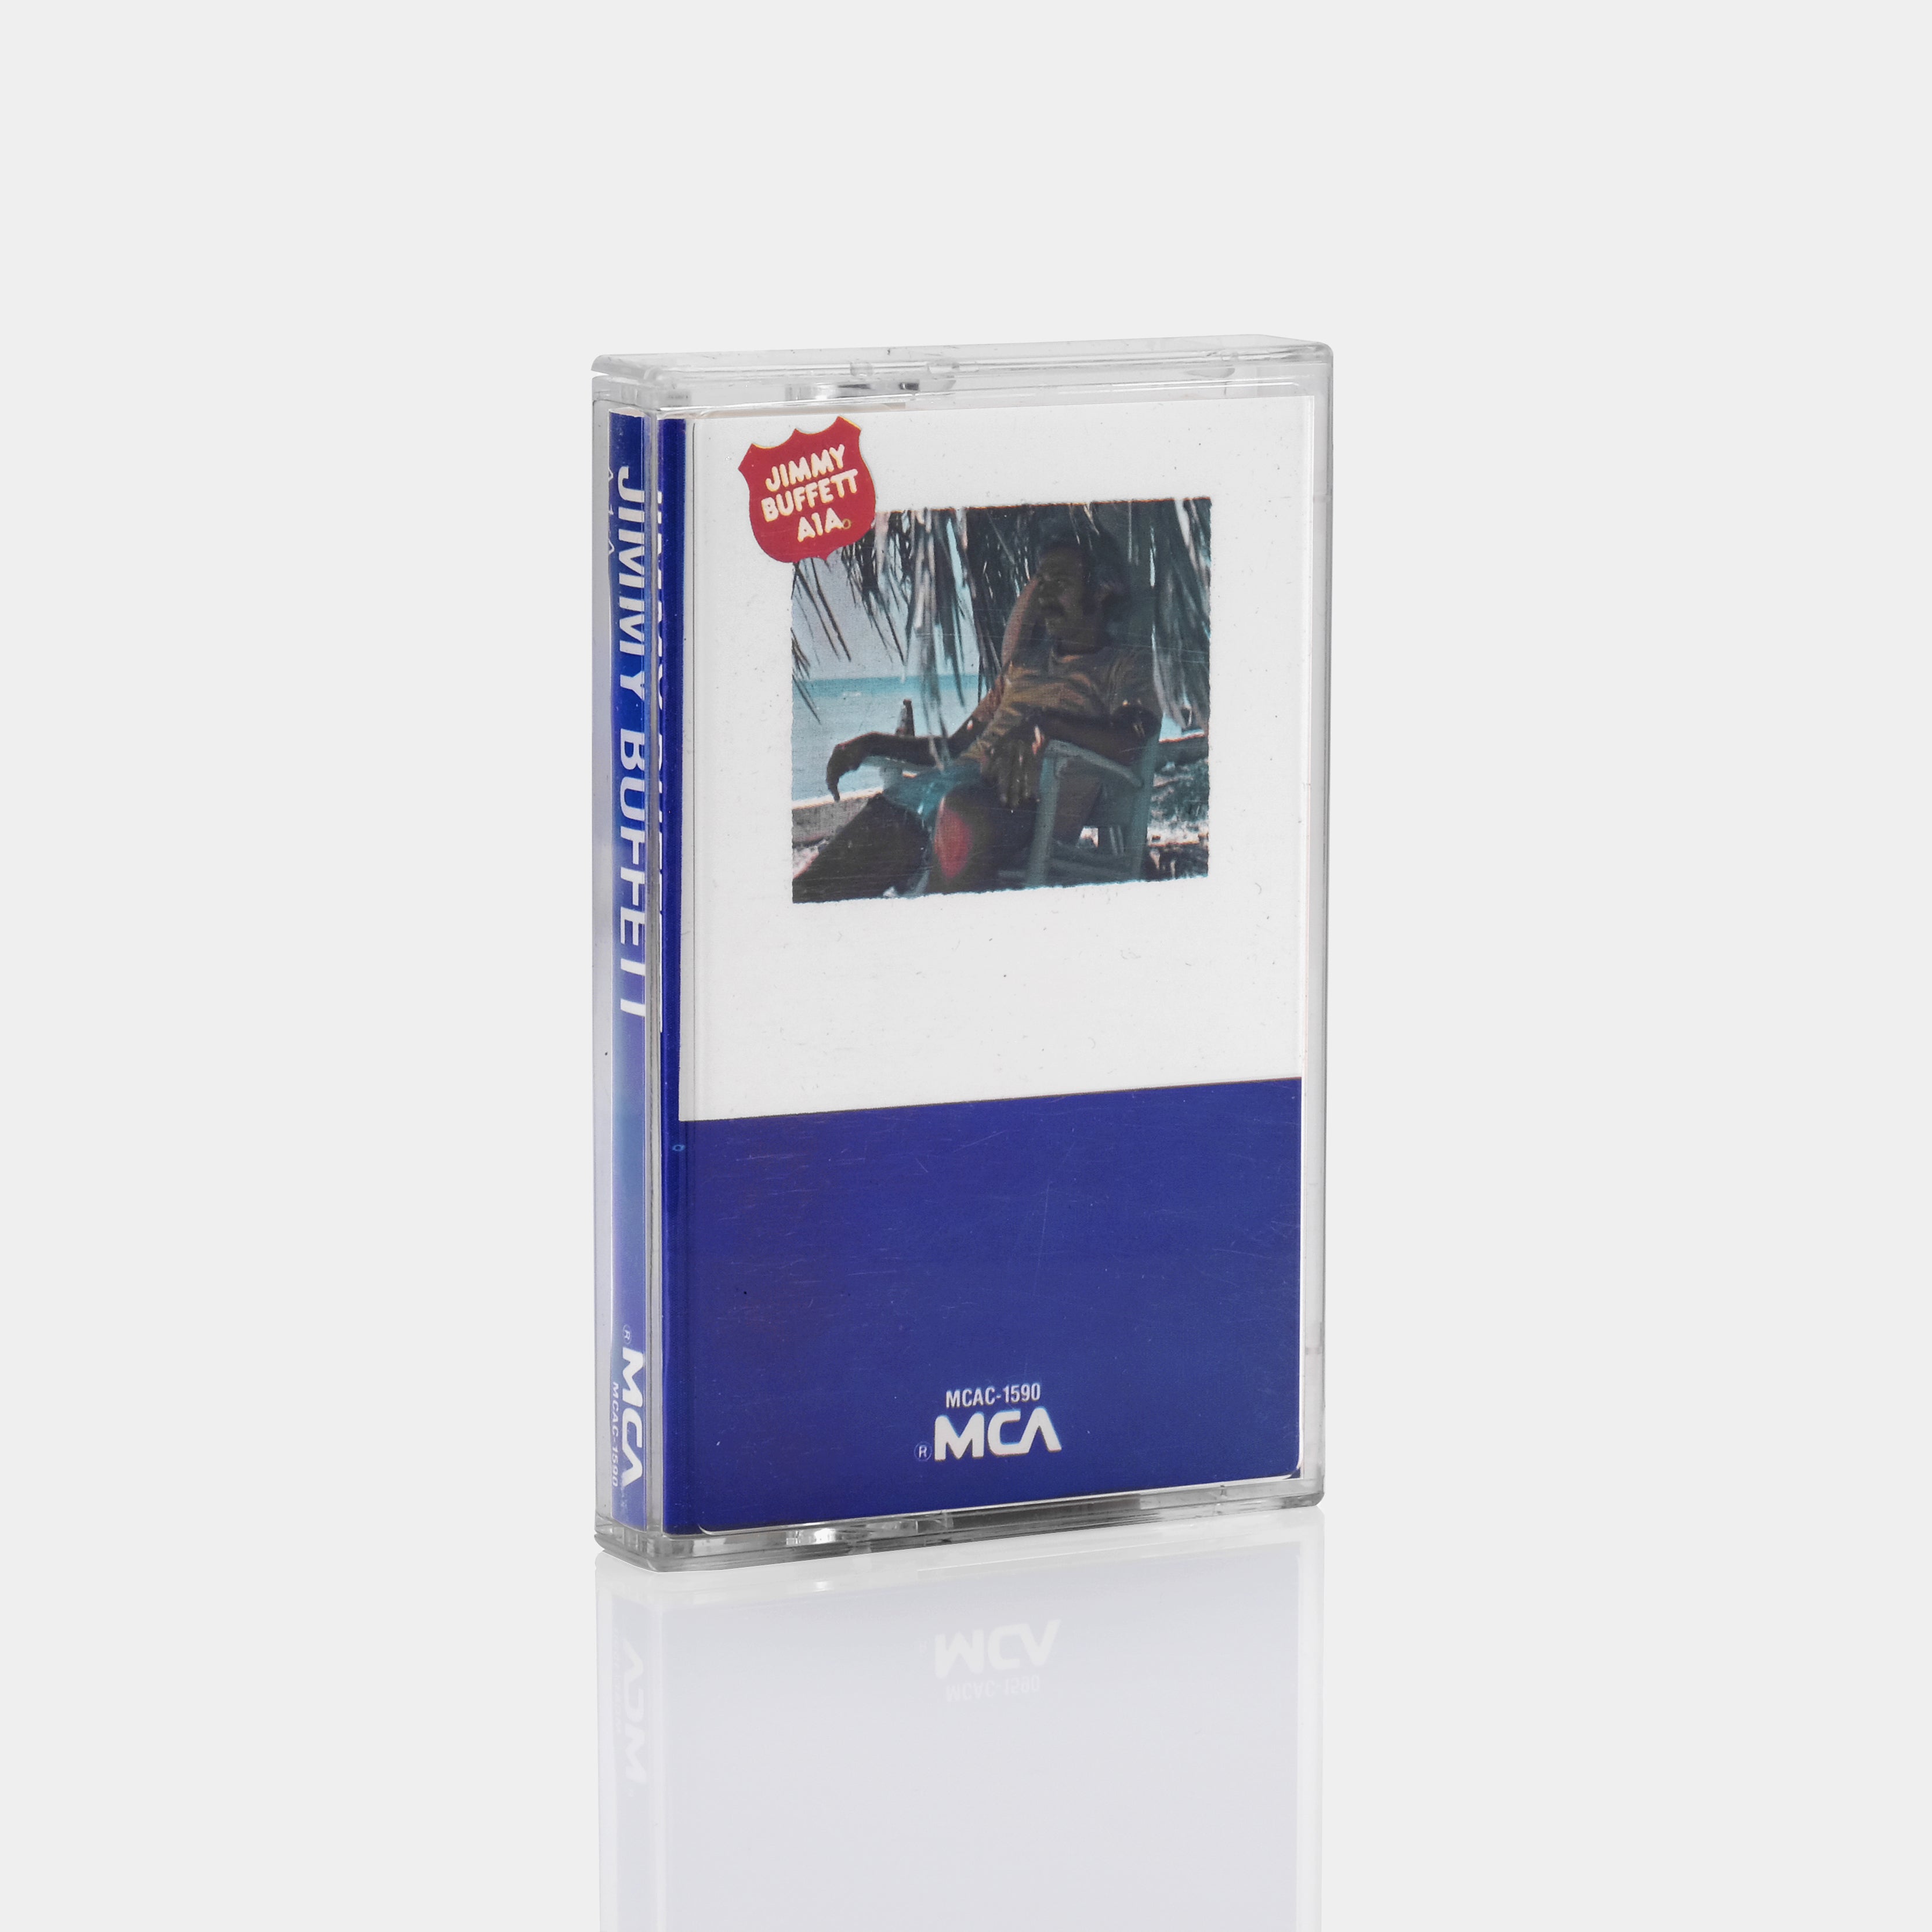 Jimmy Buffett - A1A Cassette Tape